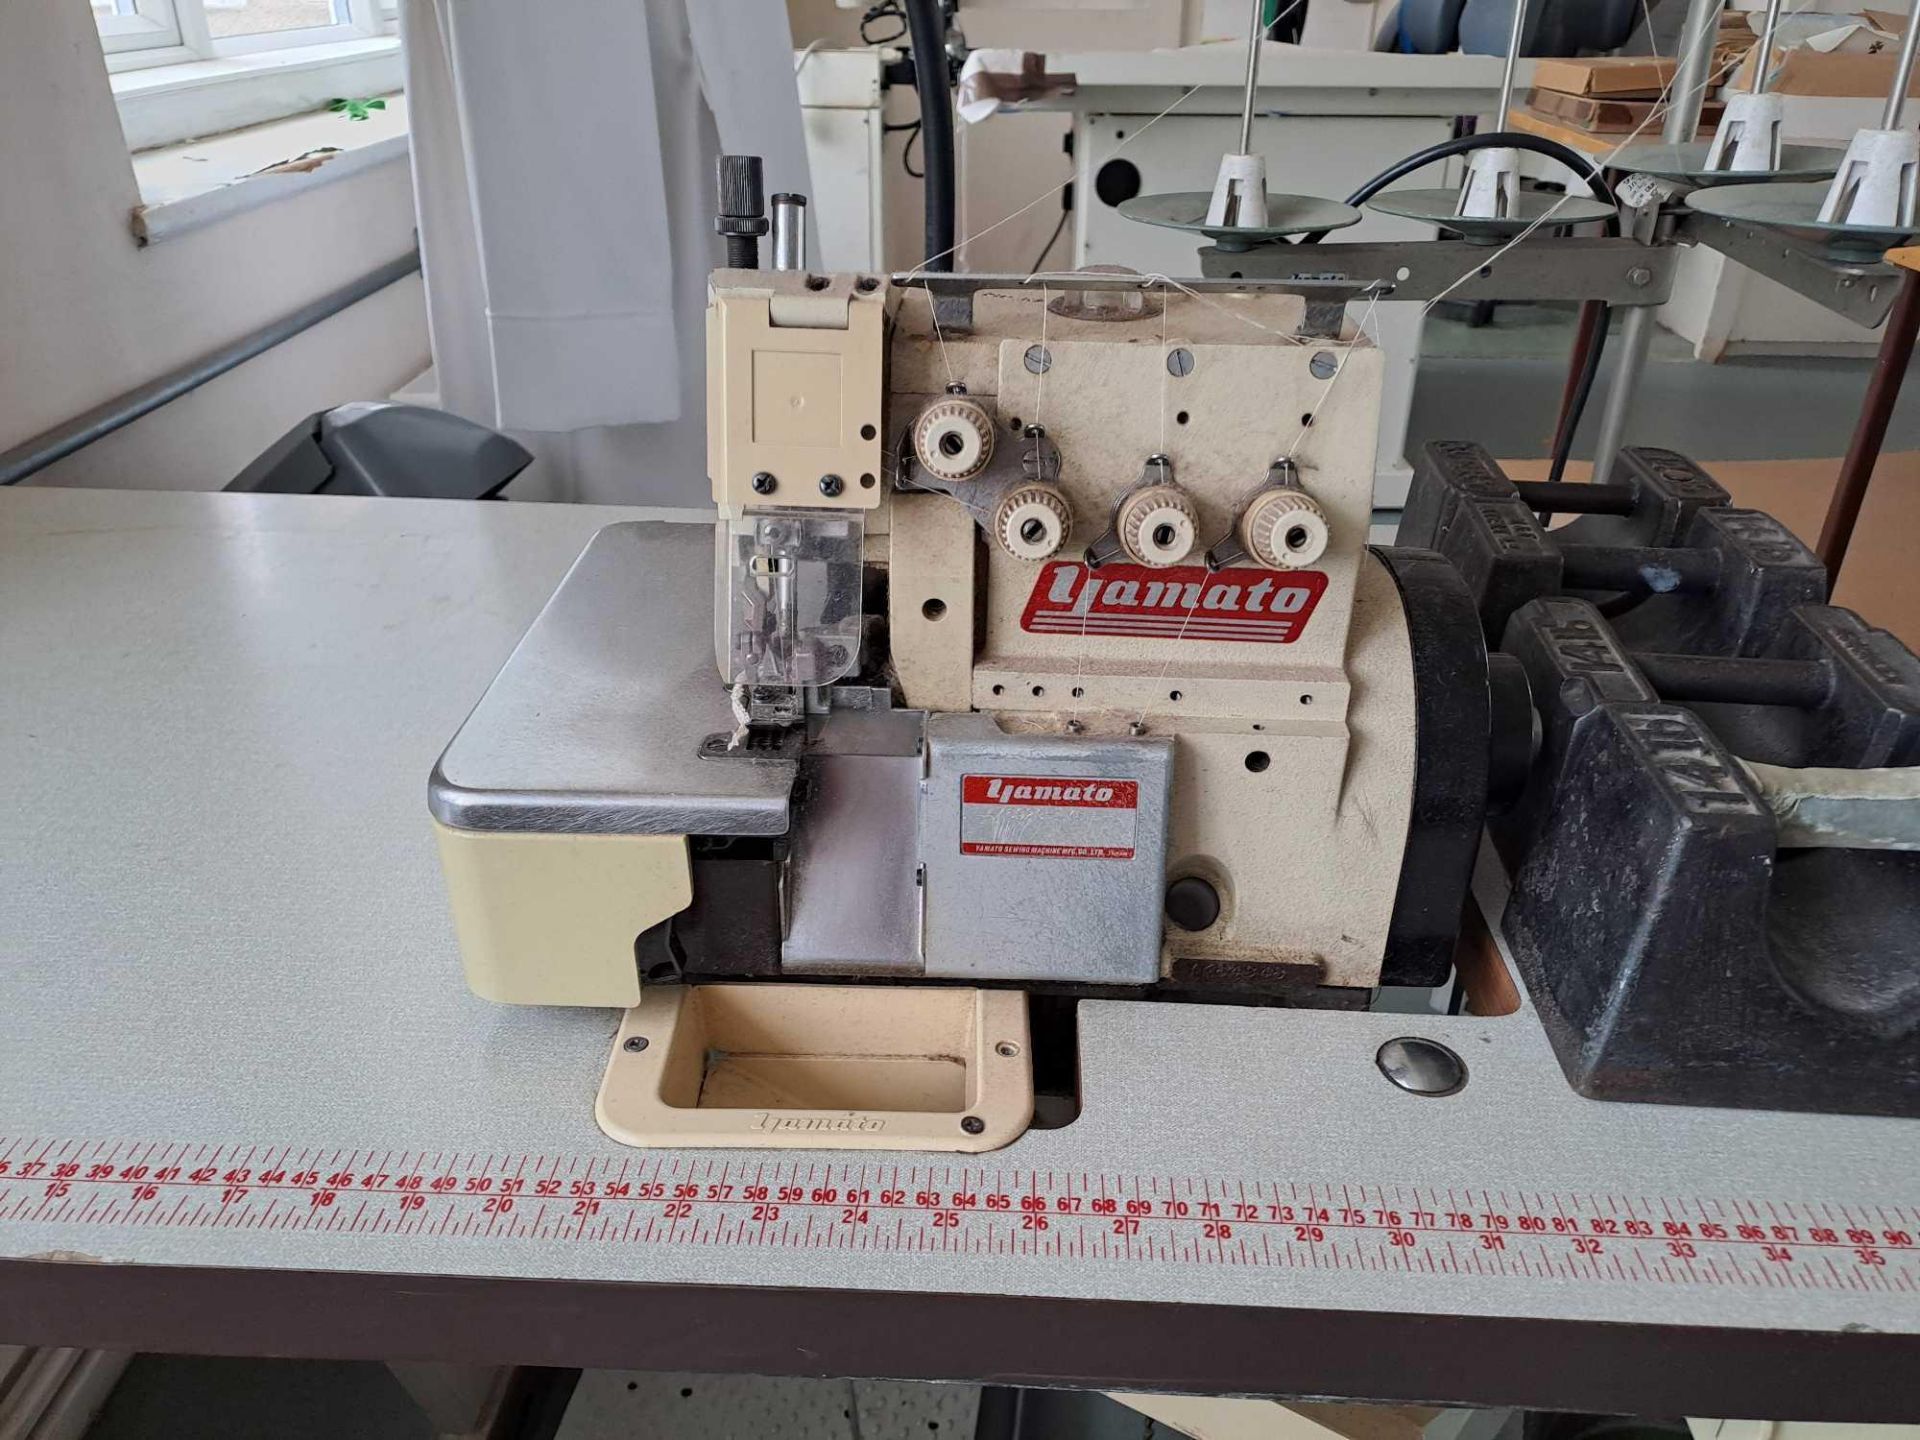 Yamoto Overlocker Sewing Machine - Image 2 of 6